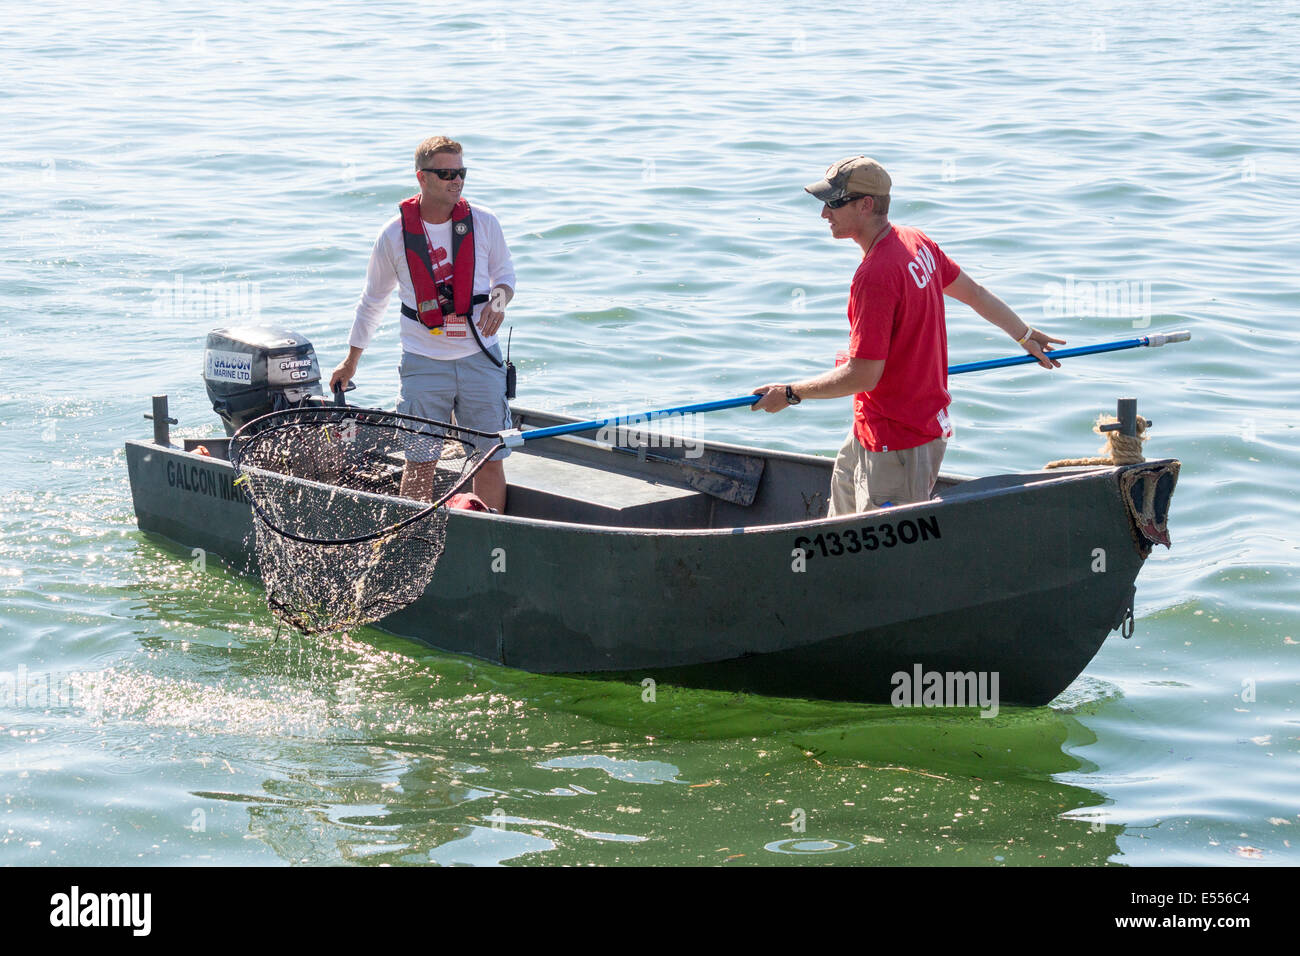 Deux jeunes ment dans les petites embarcations à l'aide de net pour nettoyer les débris hors de l'eau. Banque D'Images